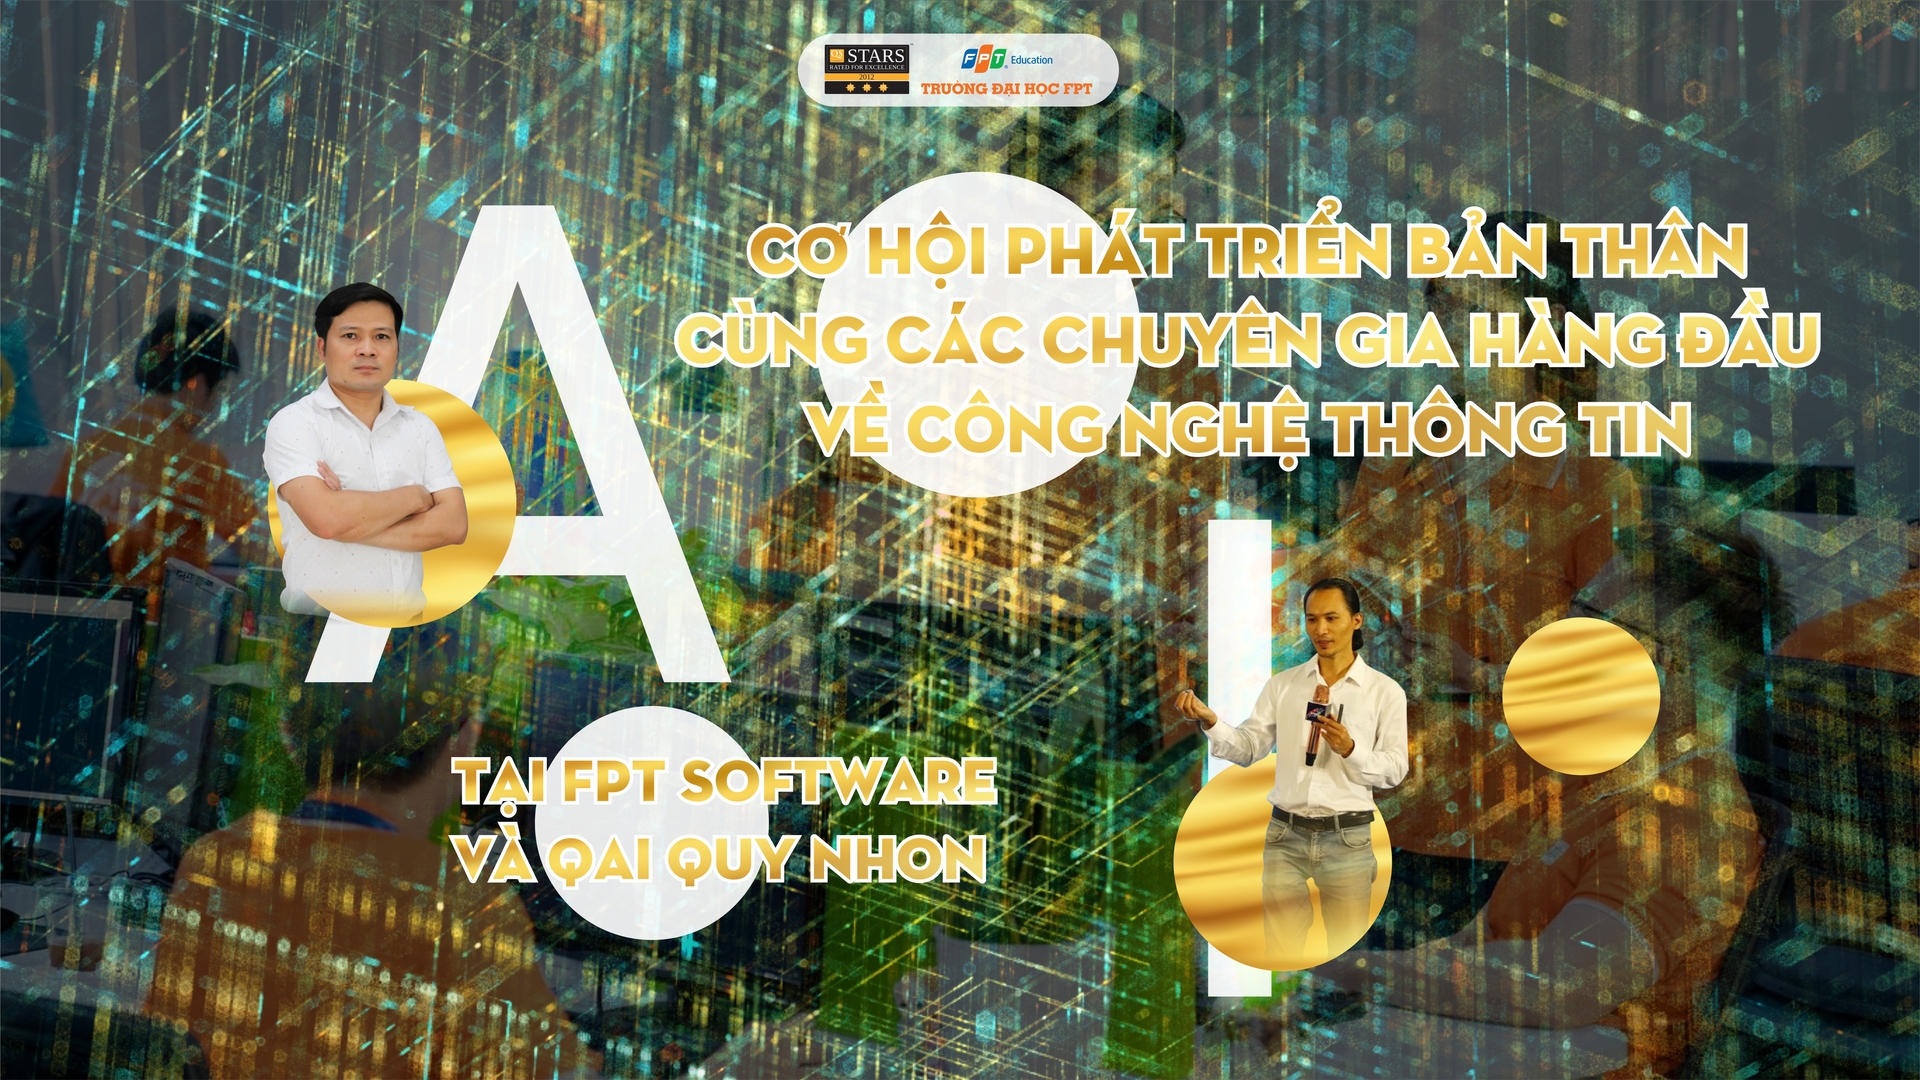 Cơ hội phát triển bản thân cùng các chuyên gia hàng đầu về công nghệ thông tin tại FPT Software và QAI Quy Nhon